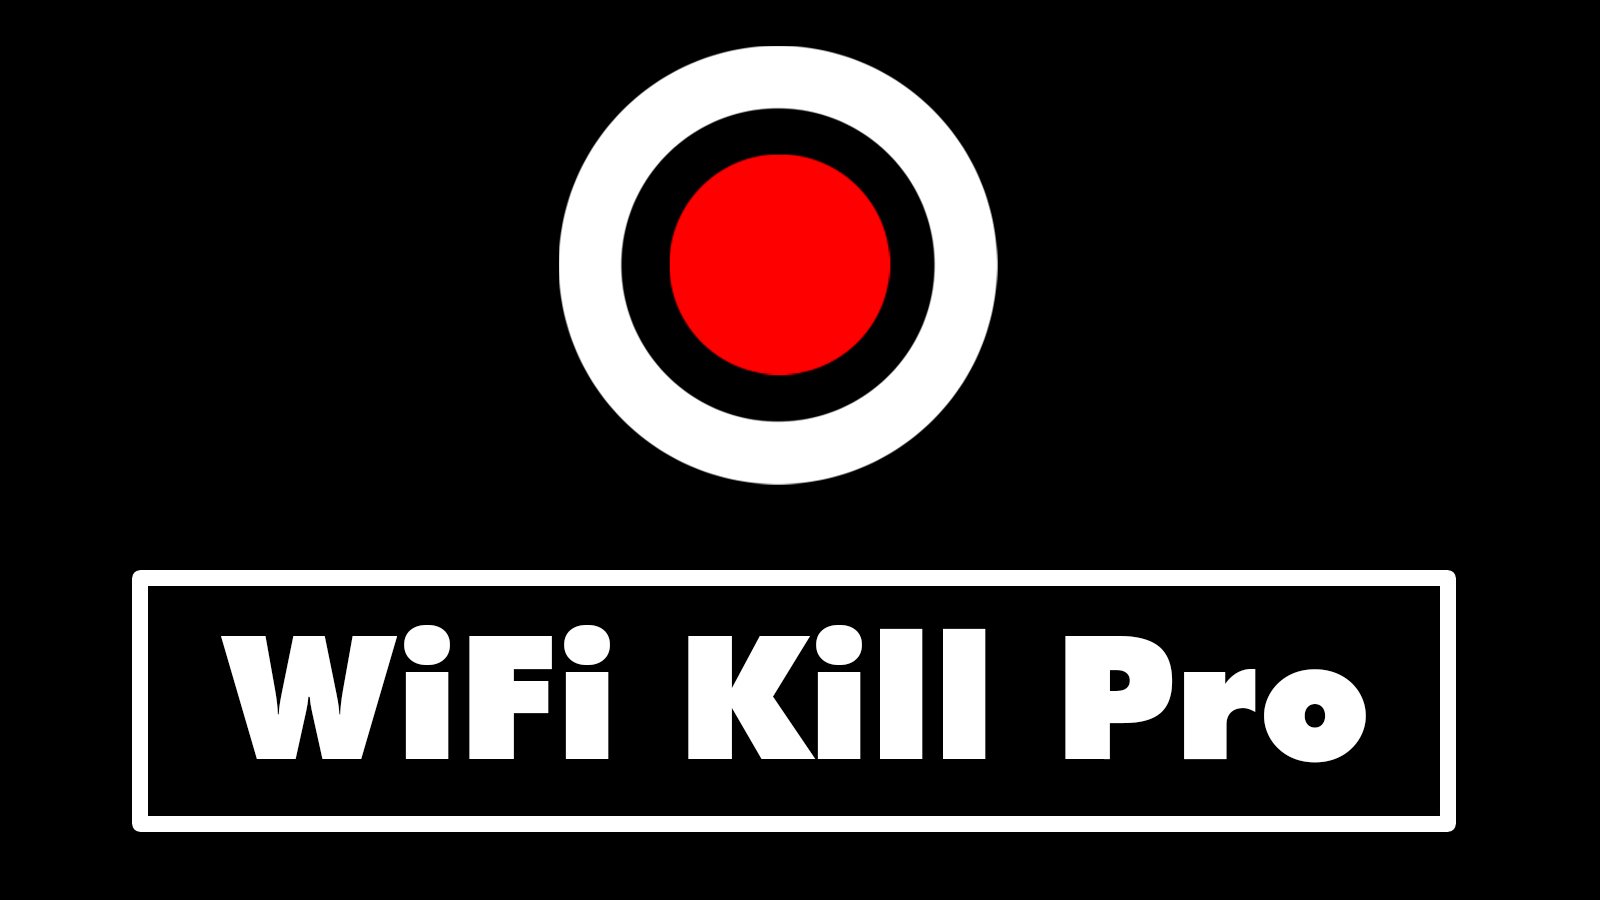 wifi kill pro hacking tool